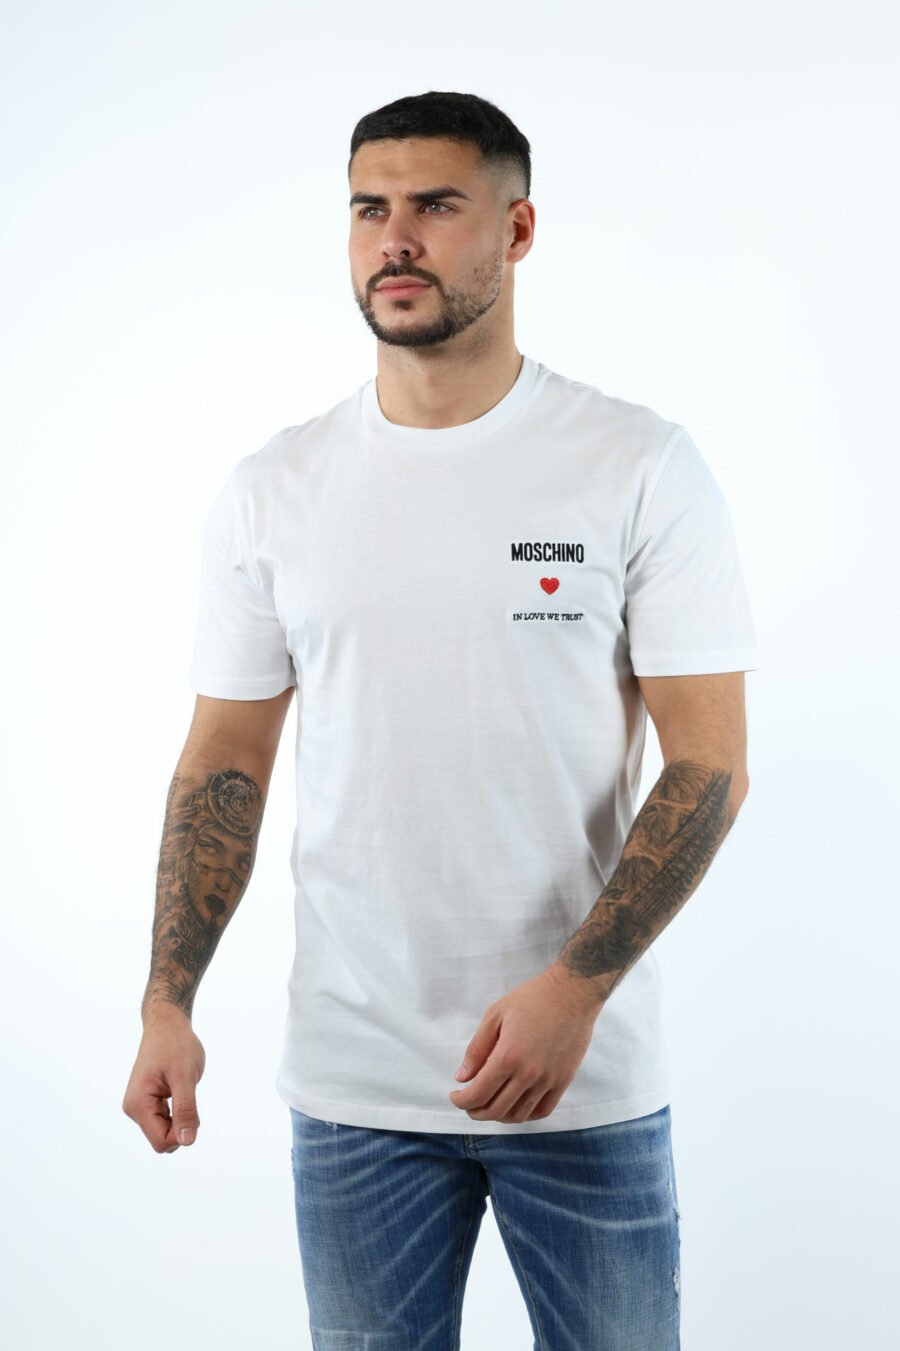 Camiseta blanca con minilogo "in love we trust" - 106642